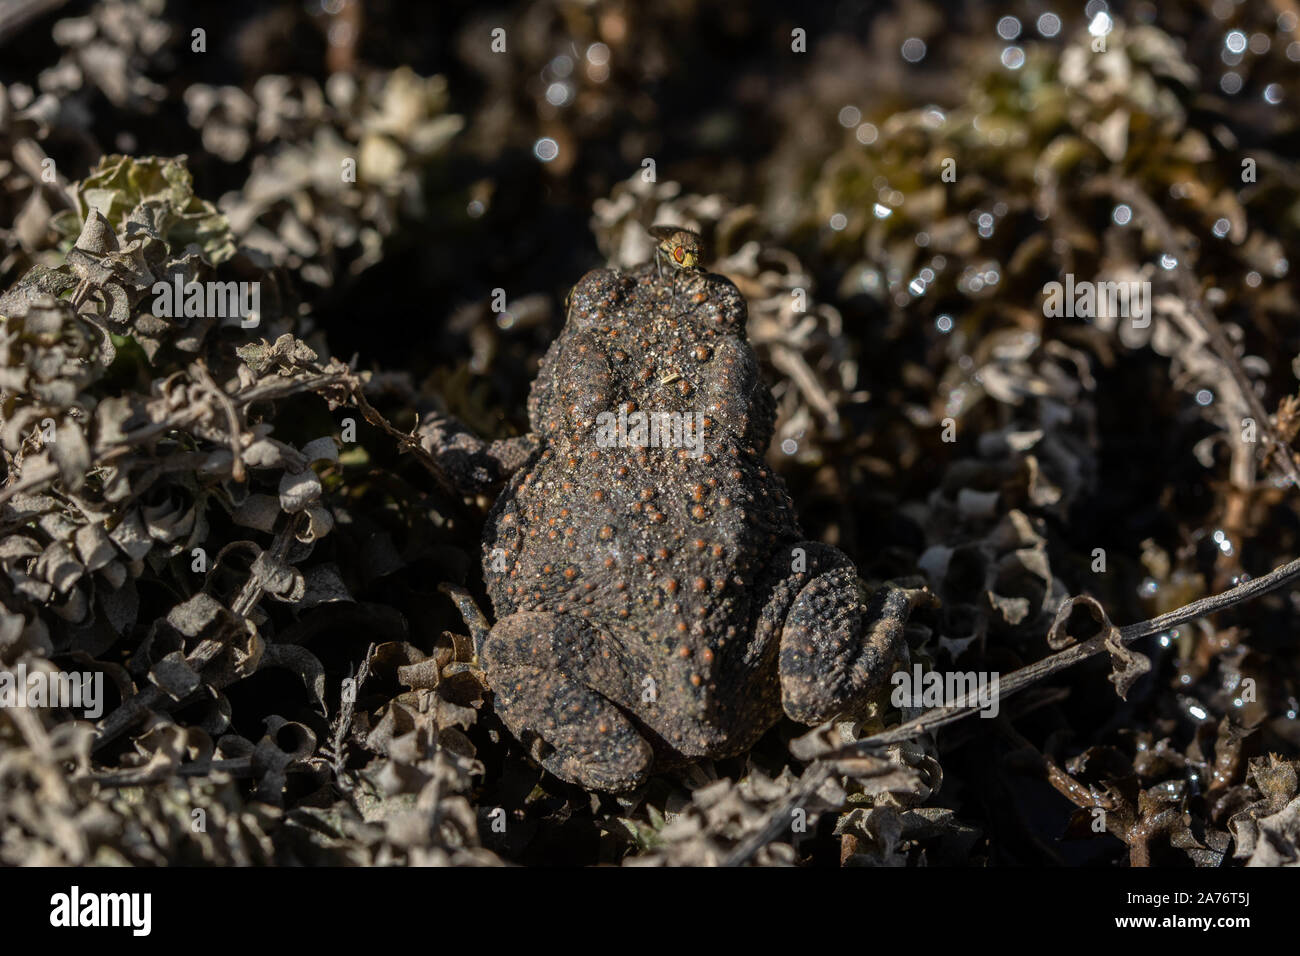 Rocky Mountain Toad (Anaxyrus woodhousii woodhousii) de la vallée de San Luis, Colorado. Banque D'Images